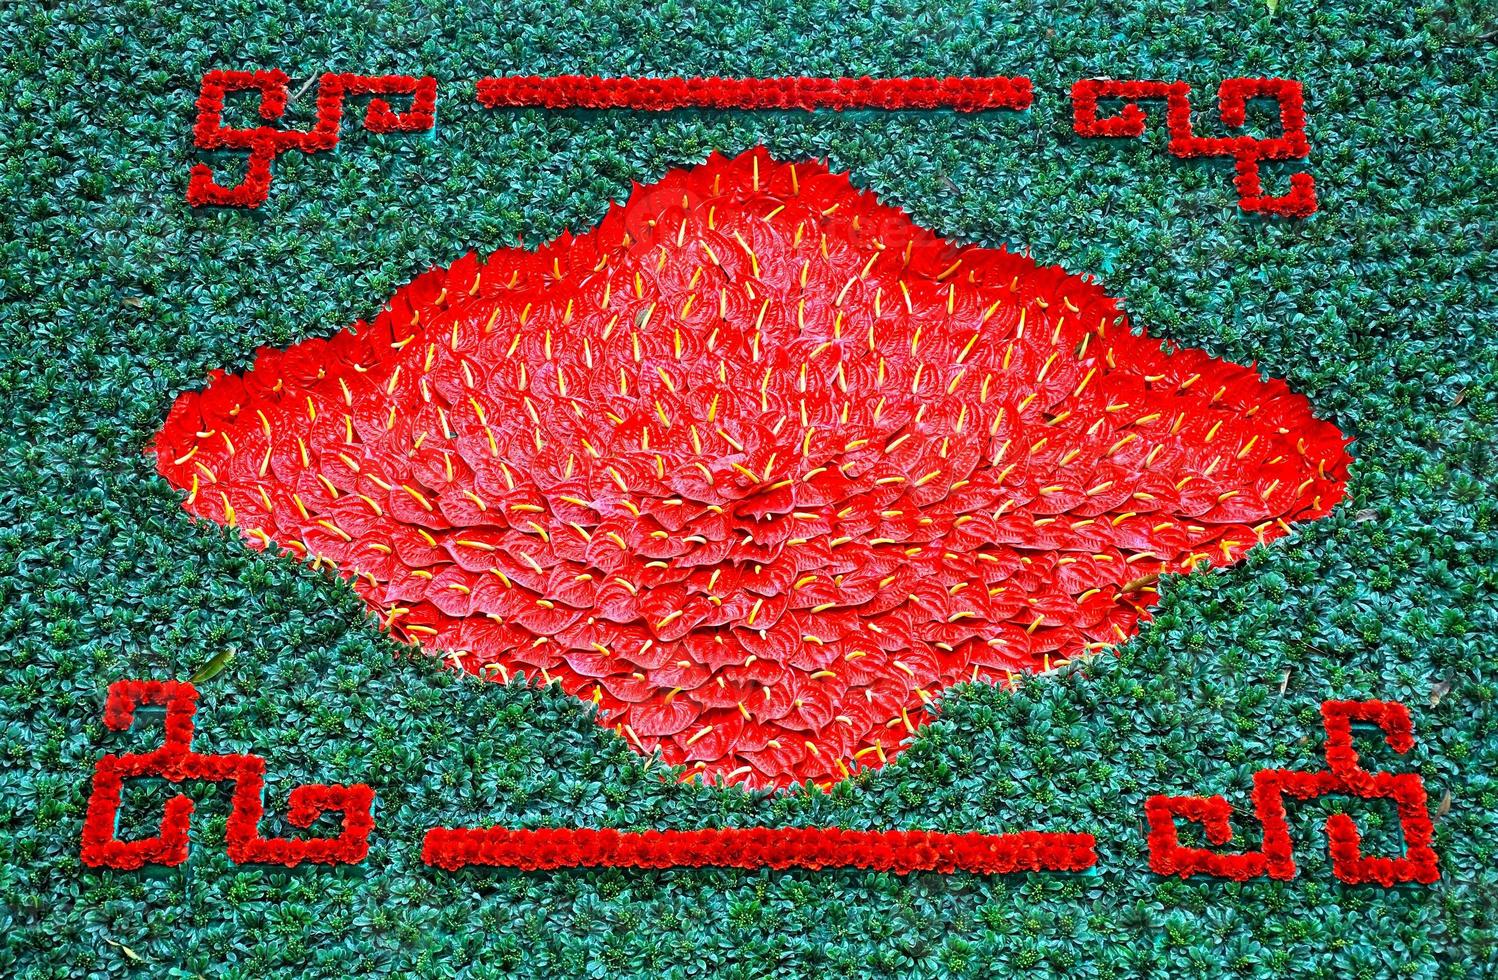 Hintergrund mit roten Flamingolilienblumen, Callalilie foto